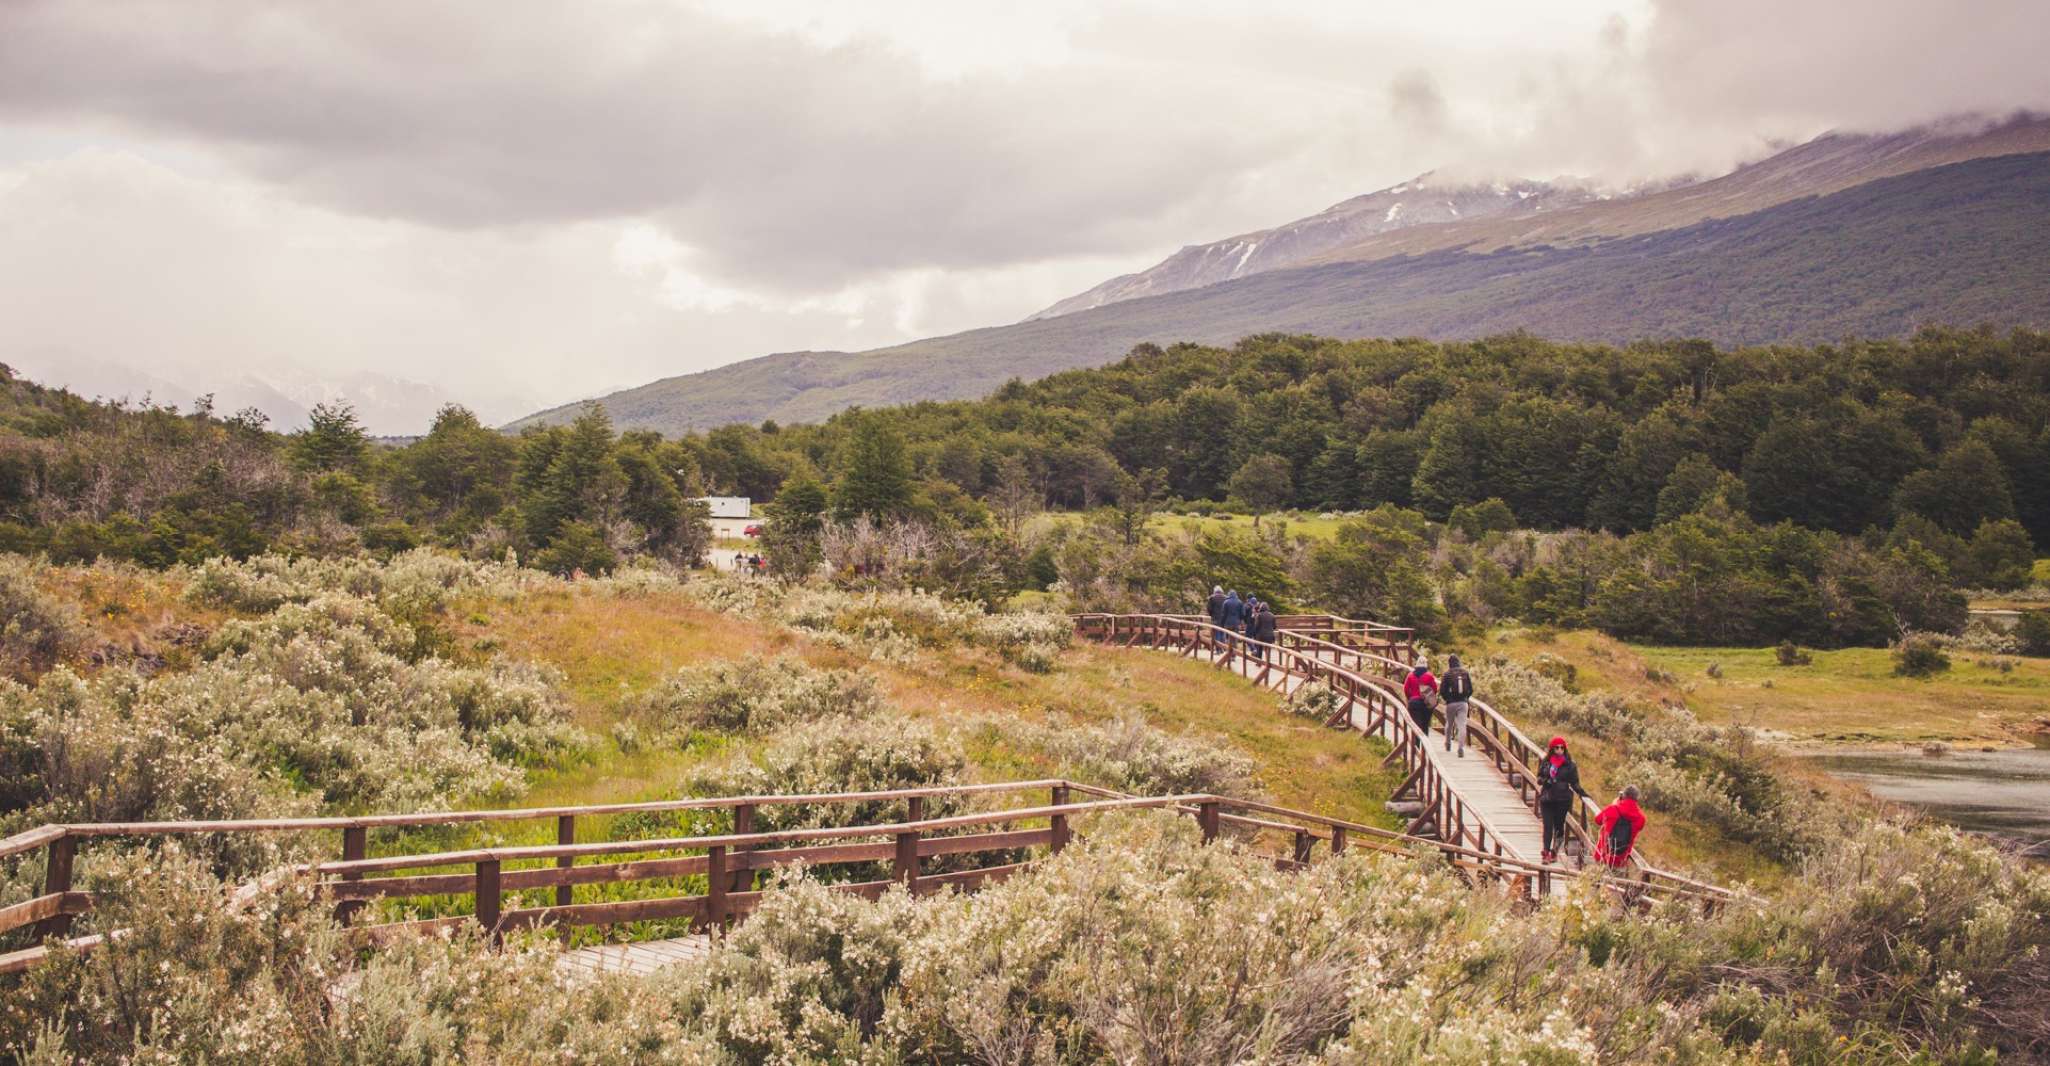 HD Tierra del Fuego National Park (No Train) - Housity